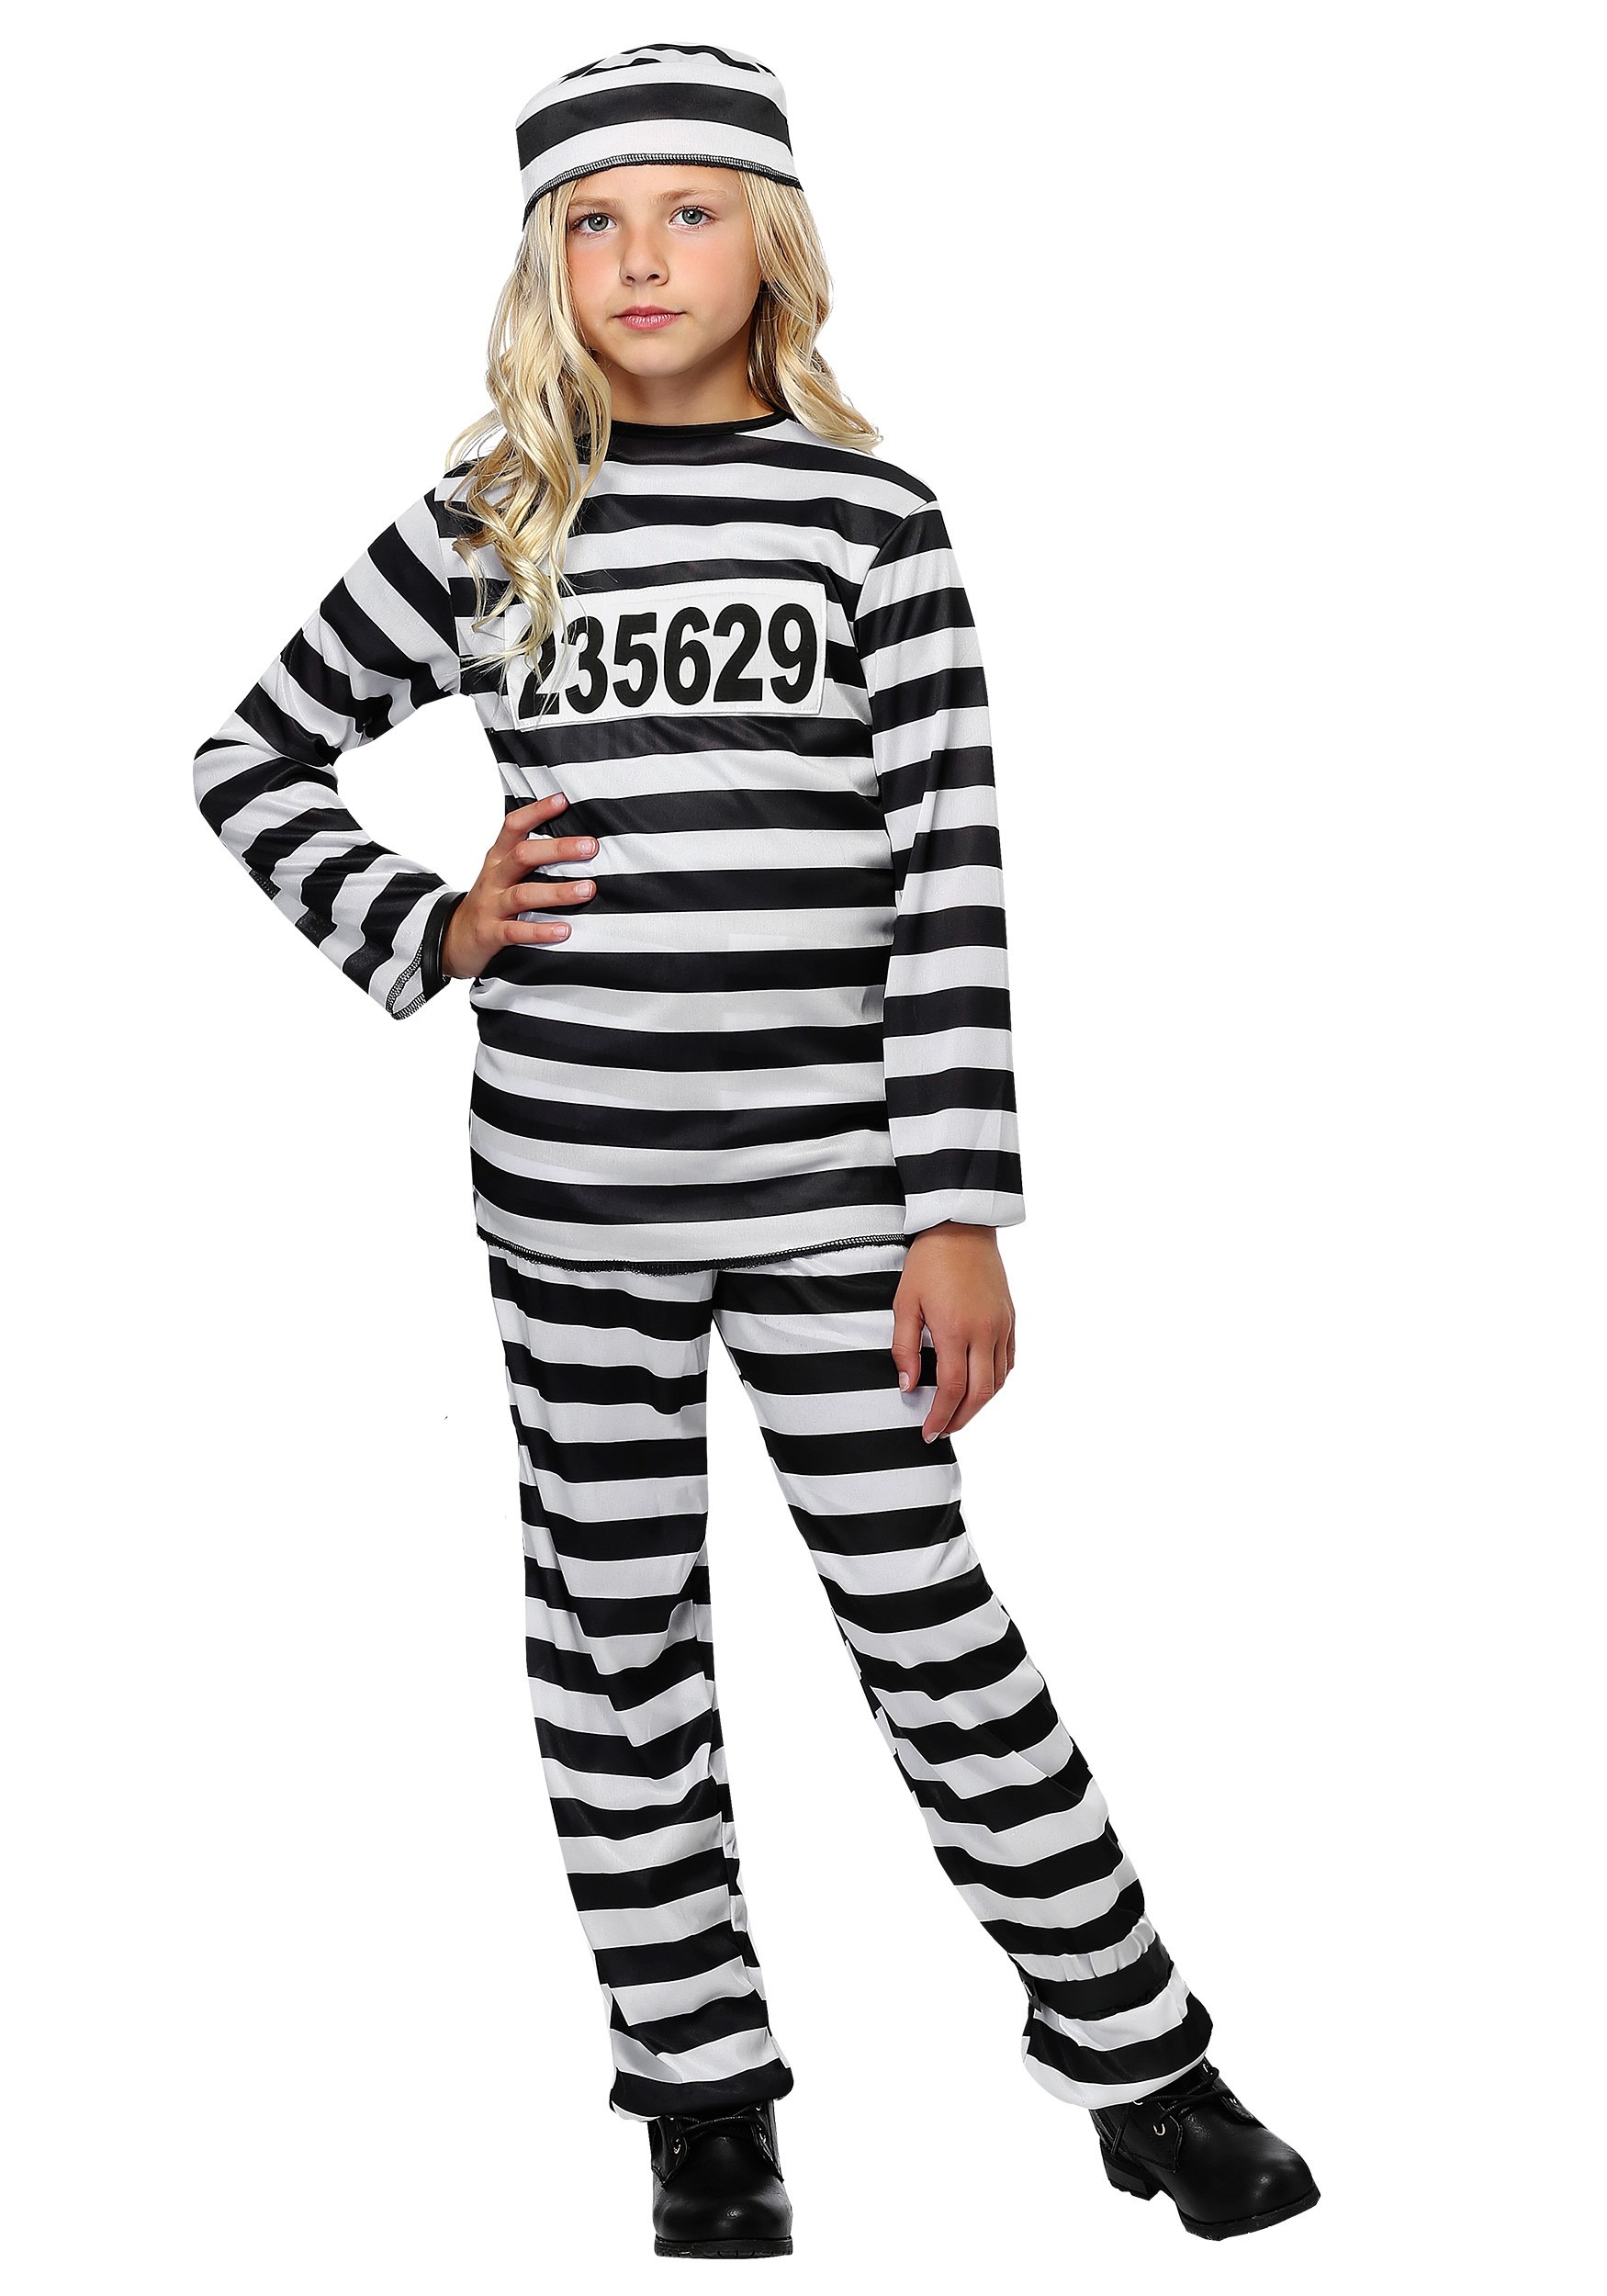 Prisoner Girls Costume